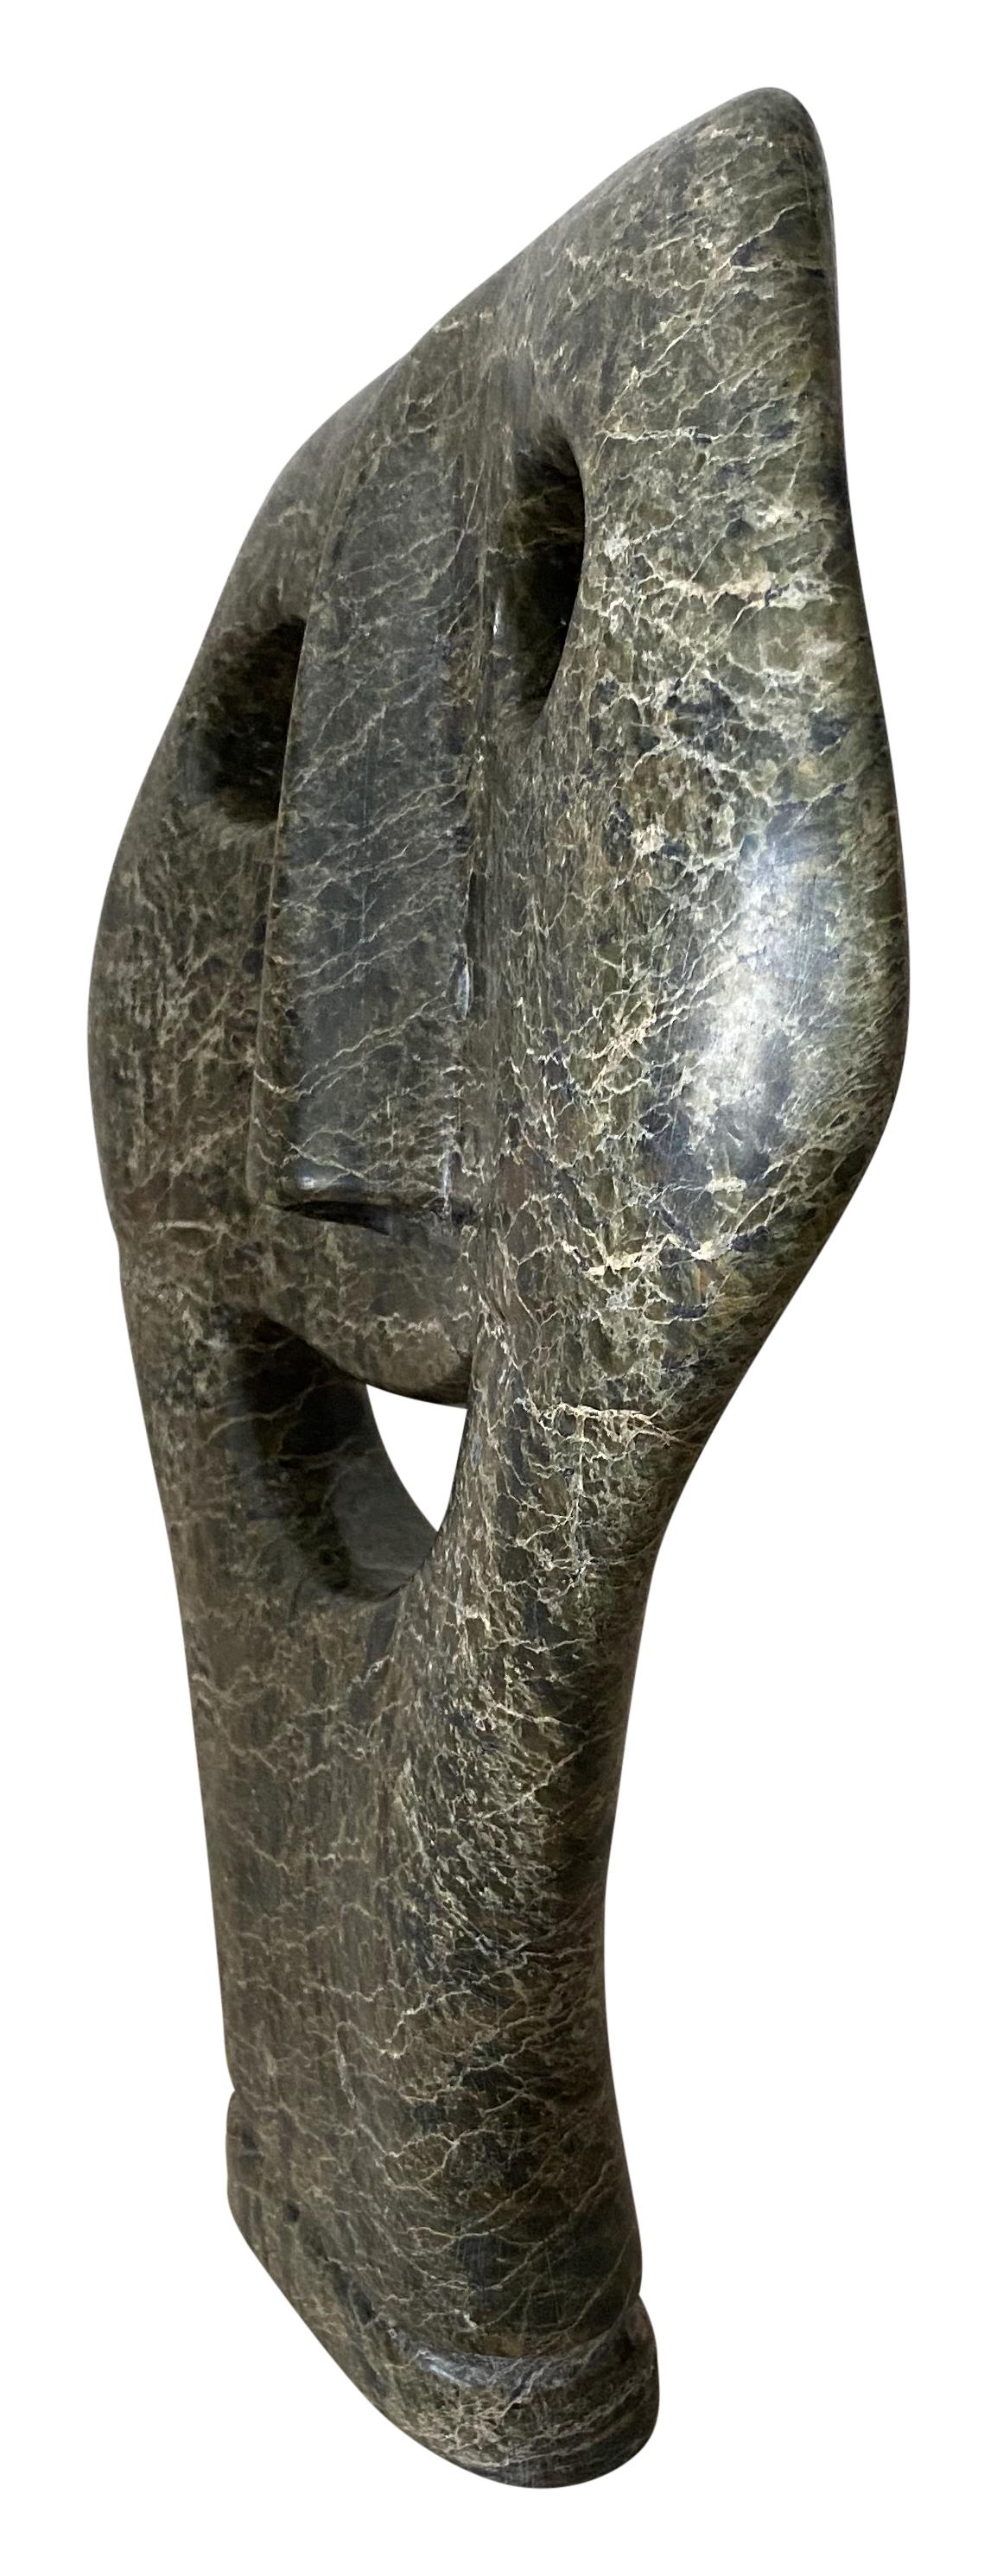 Sculpture figurative de masque en pierre verte sculptée par Intuit.